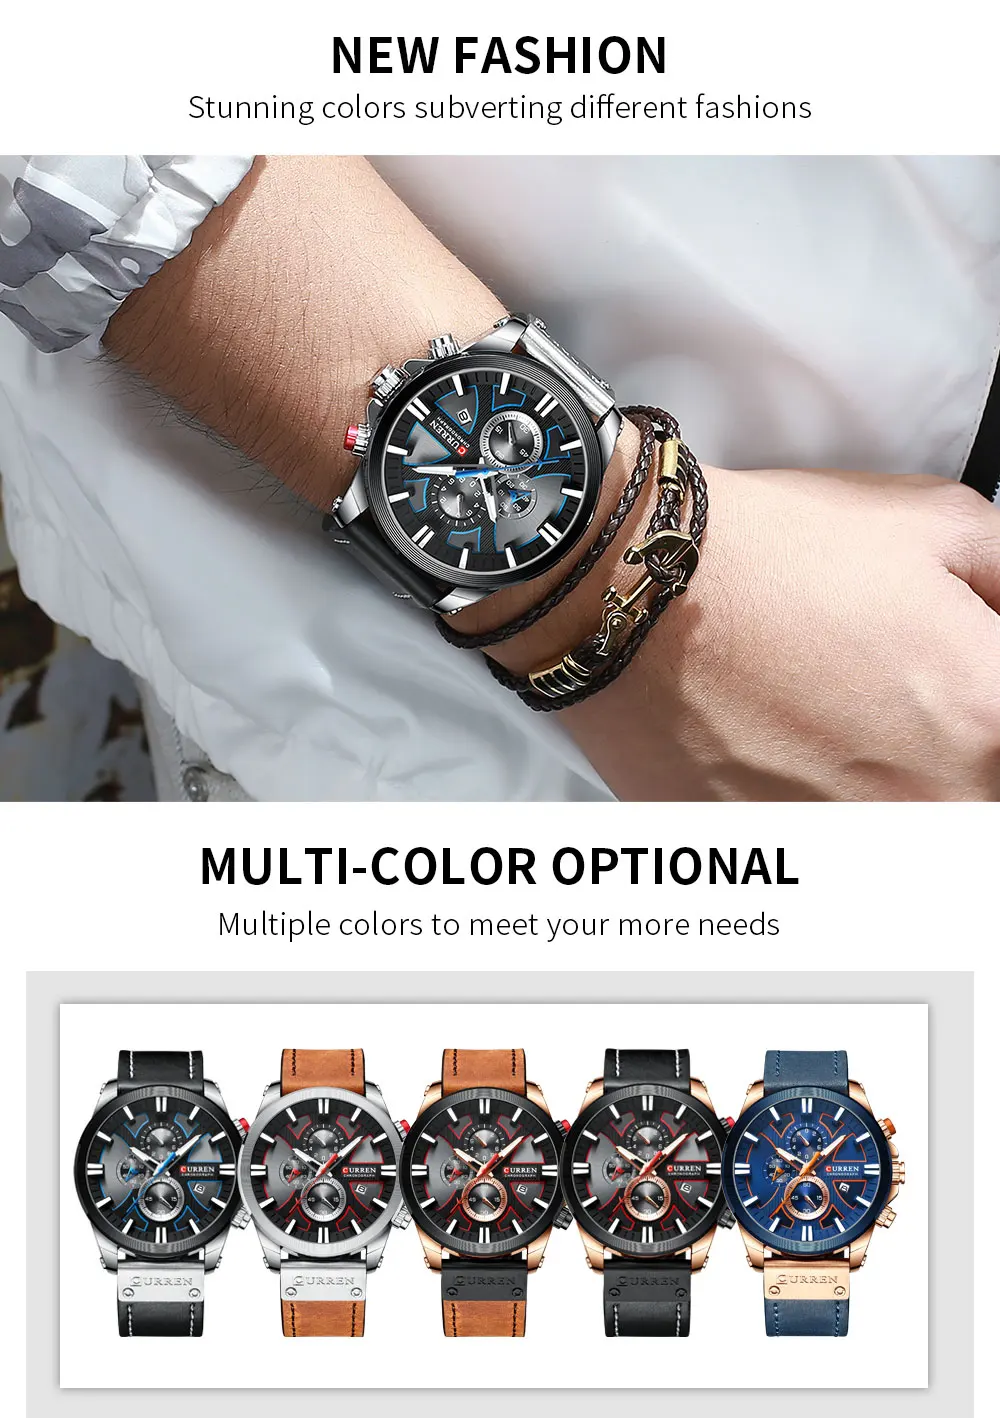 CURREN Часы Хронограф Спортивные мужские s кварцевые часы кожаные мужские наручные часы Relogio Masculino модный подарок для мужчин